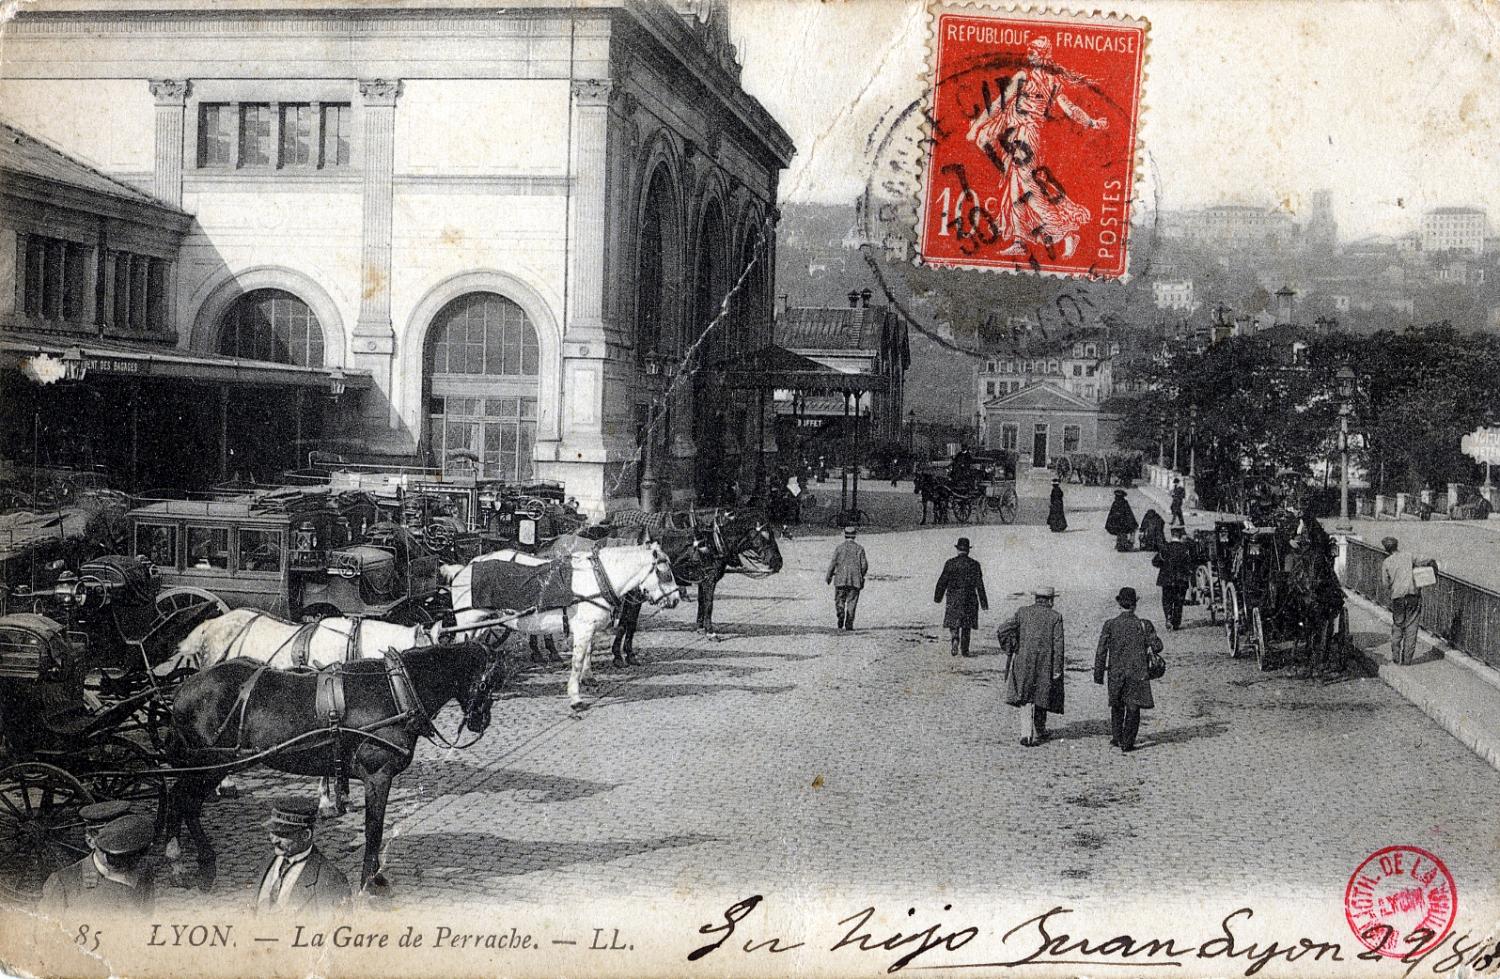 Lyon. - La Gare de Perrache